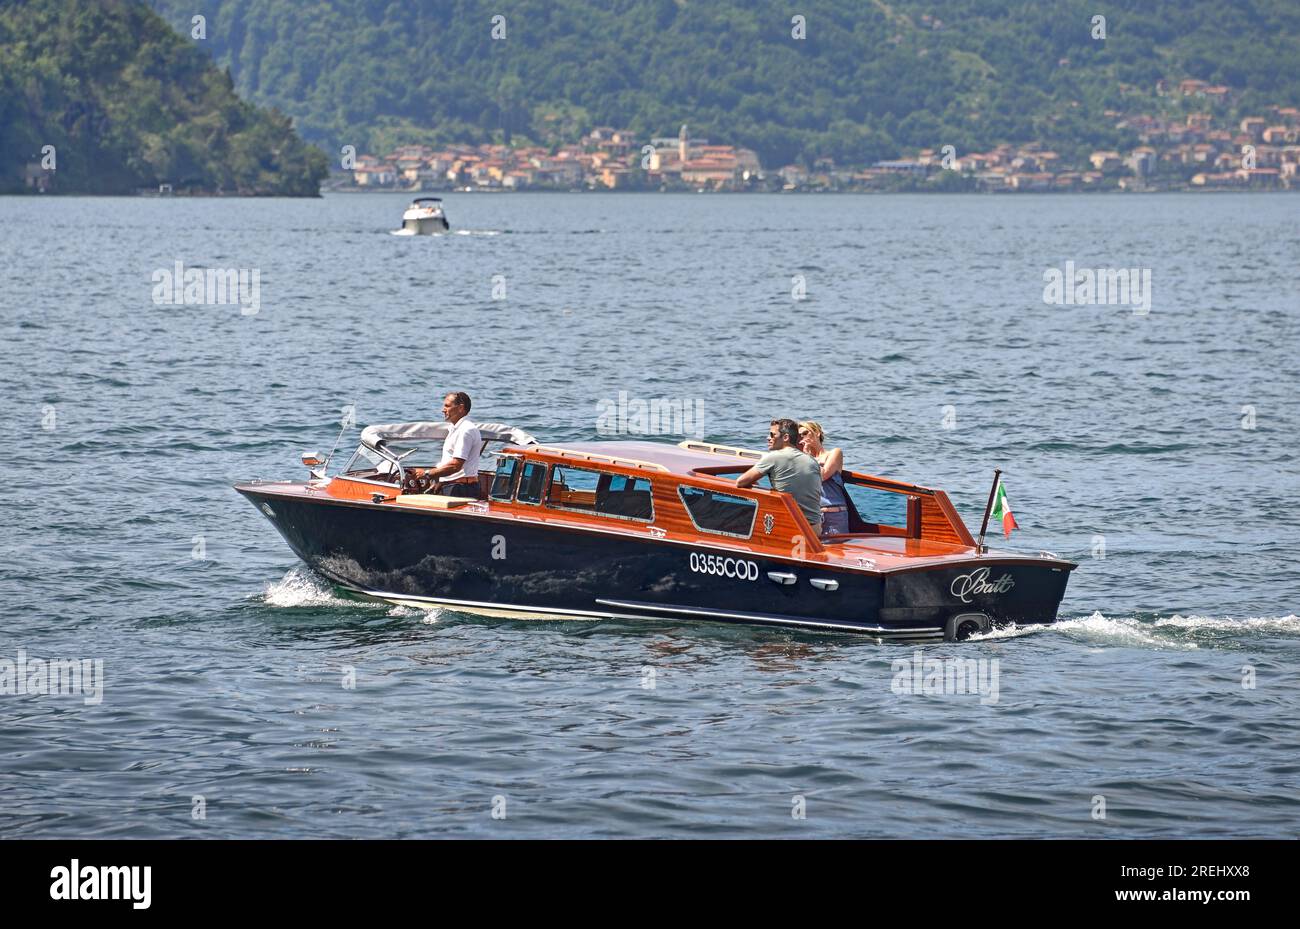 Comer See, Italien - 24. Mai 2017: Wassertaxi-Fähren auf dem italienischen Comer See zwischen Städten am Seeufer wie Varenna, Bellagio und Lecco. Stockfoto